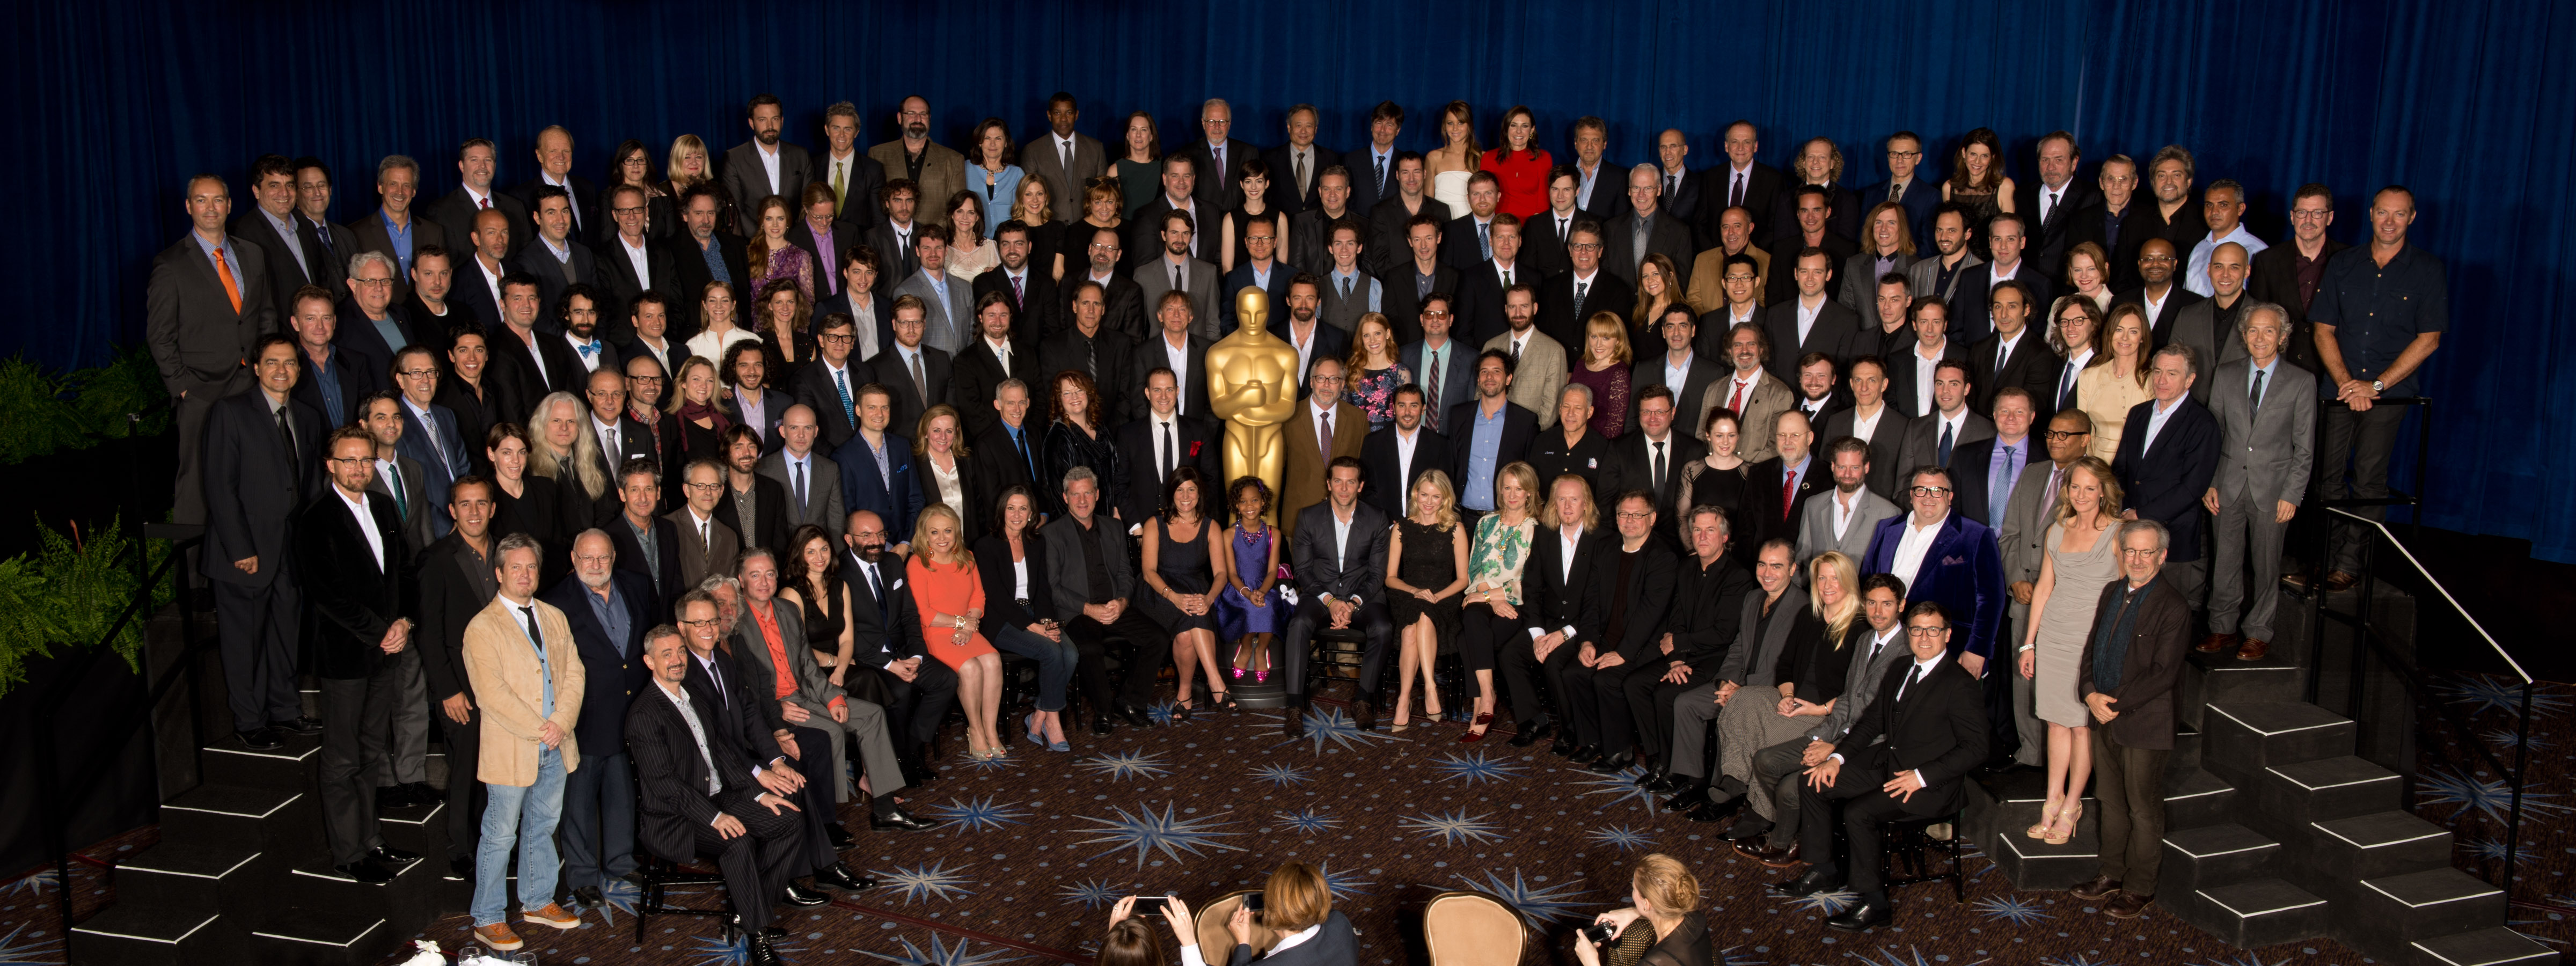 Oscars-Luncheon-2013